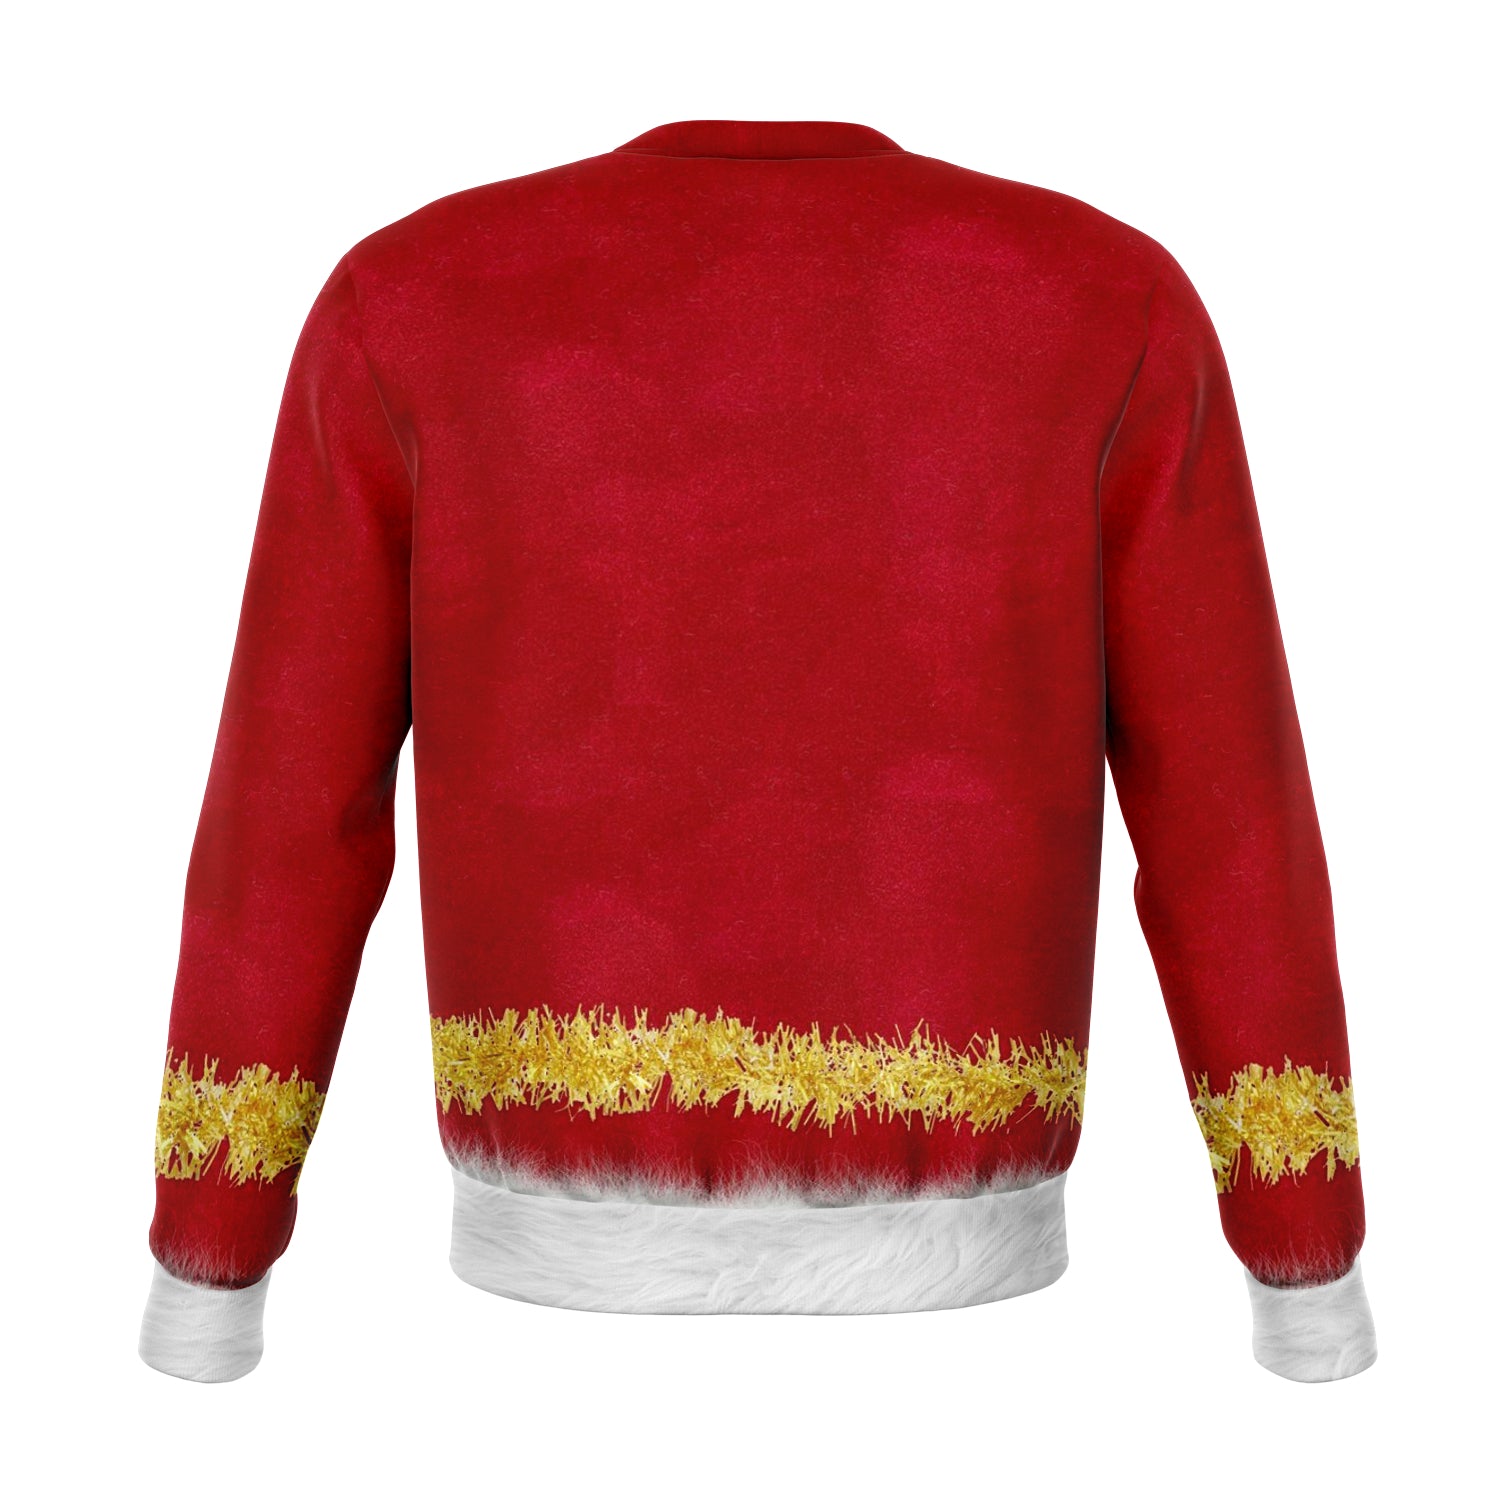 Feel the Joy - Ugly Christmas Sweater